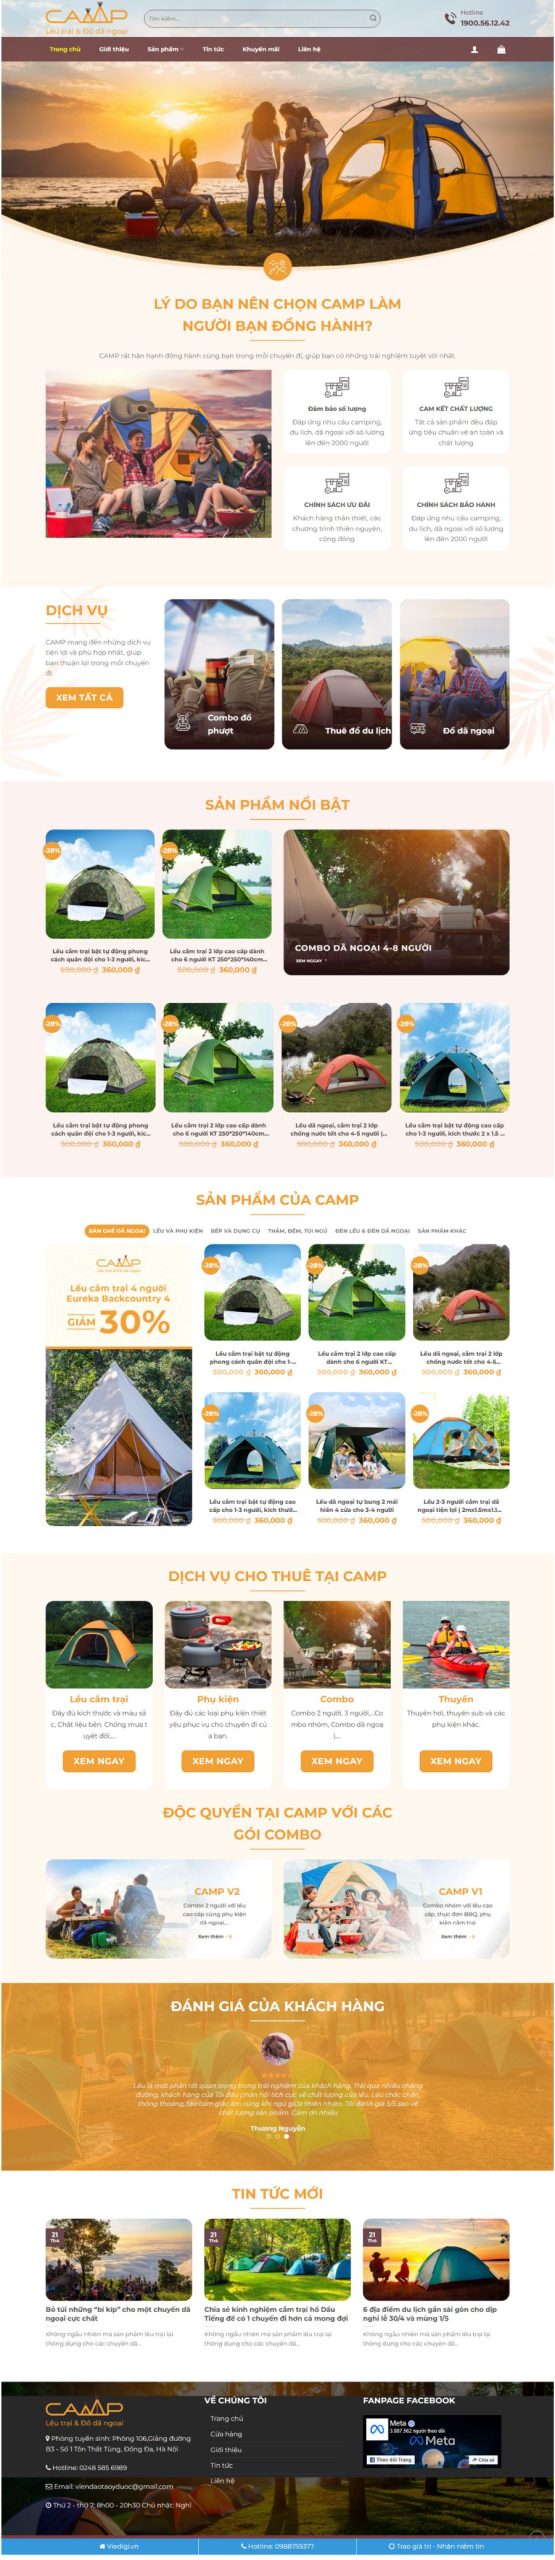 Theme Wordpress Website bán đồ điphượt, lều cấm trại